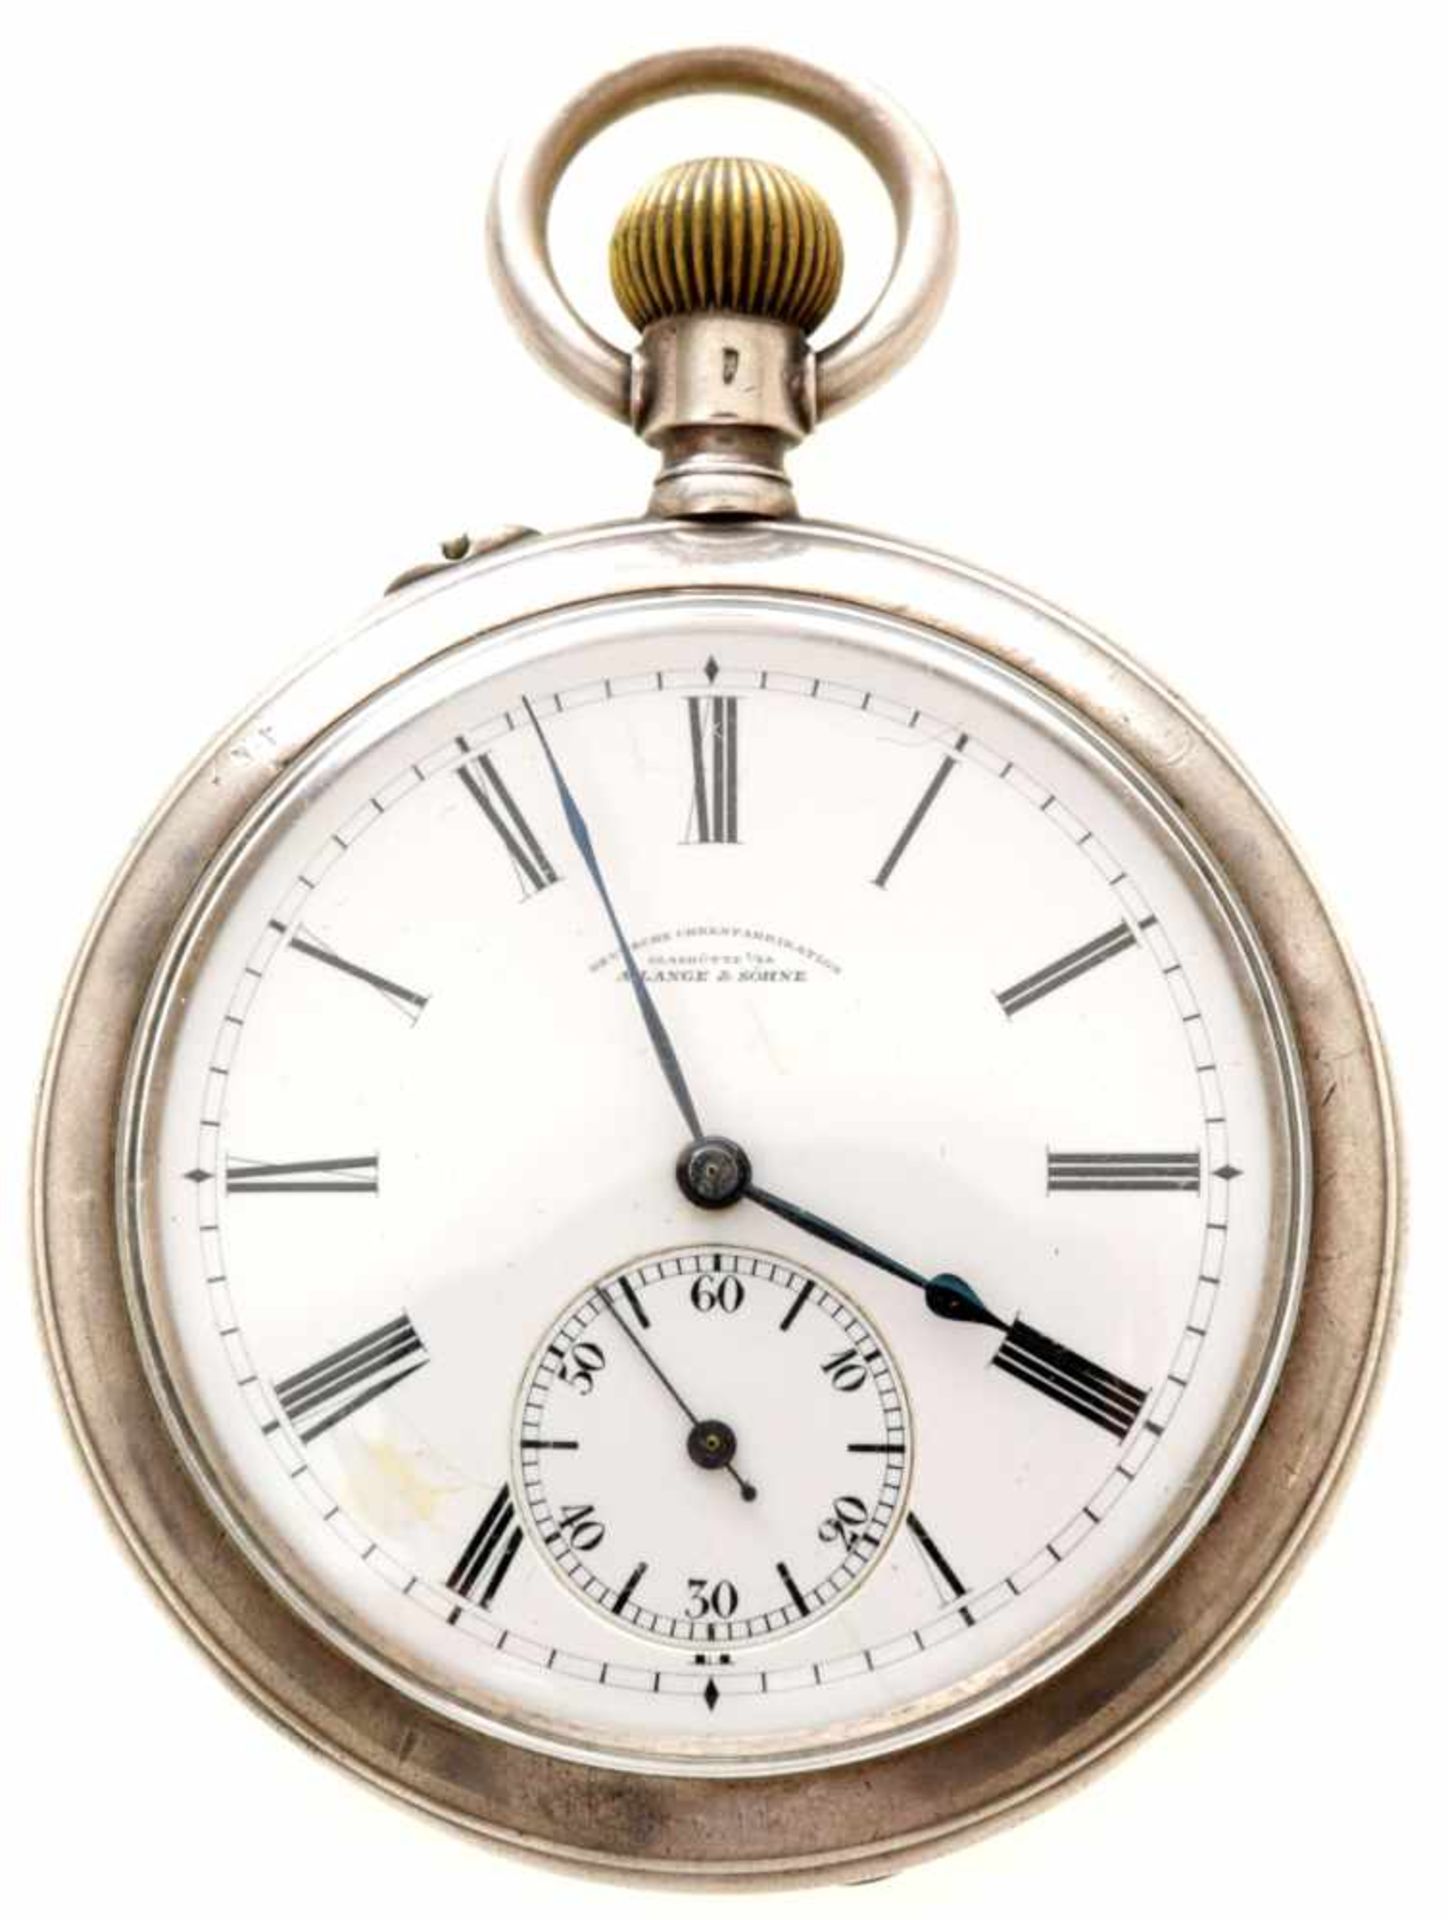 Herrentaschenuhr875er Silber/Metall, Deutsche Uhrenfabrikation Glashütte A. Lange & Söhne, um 1900